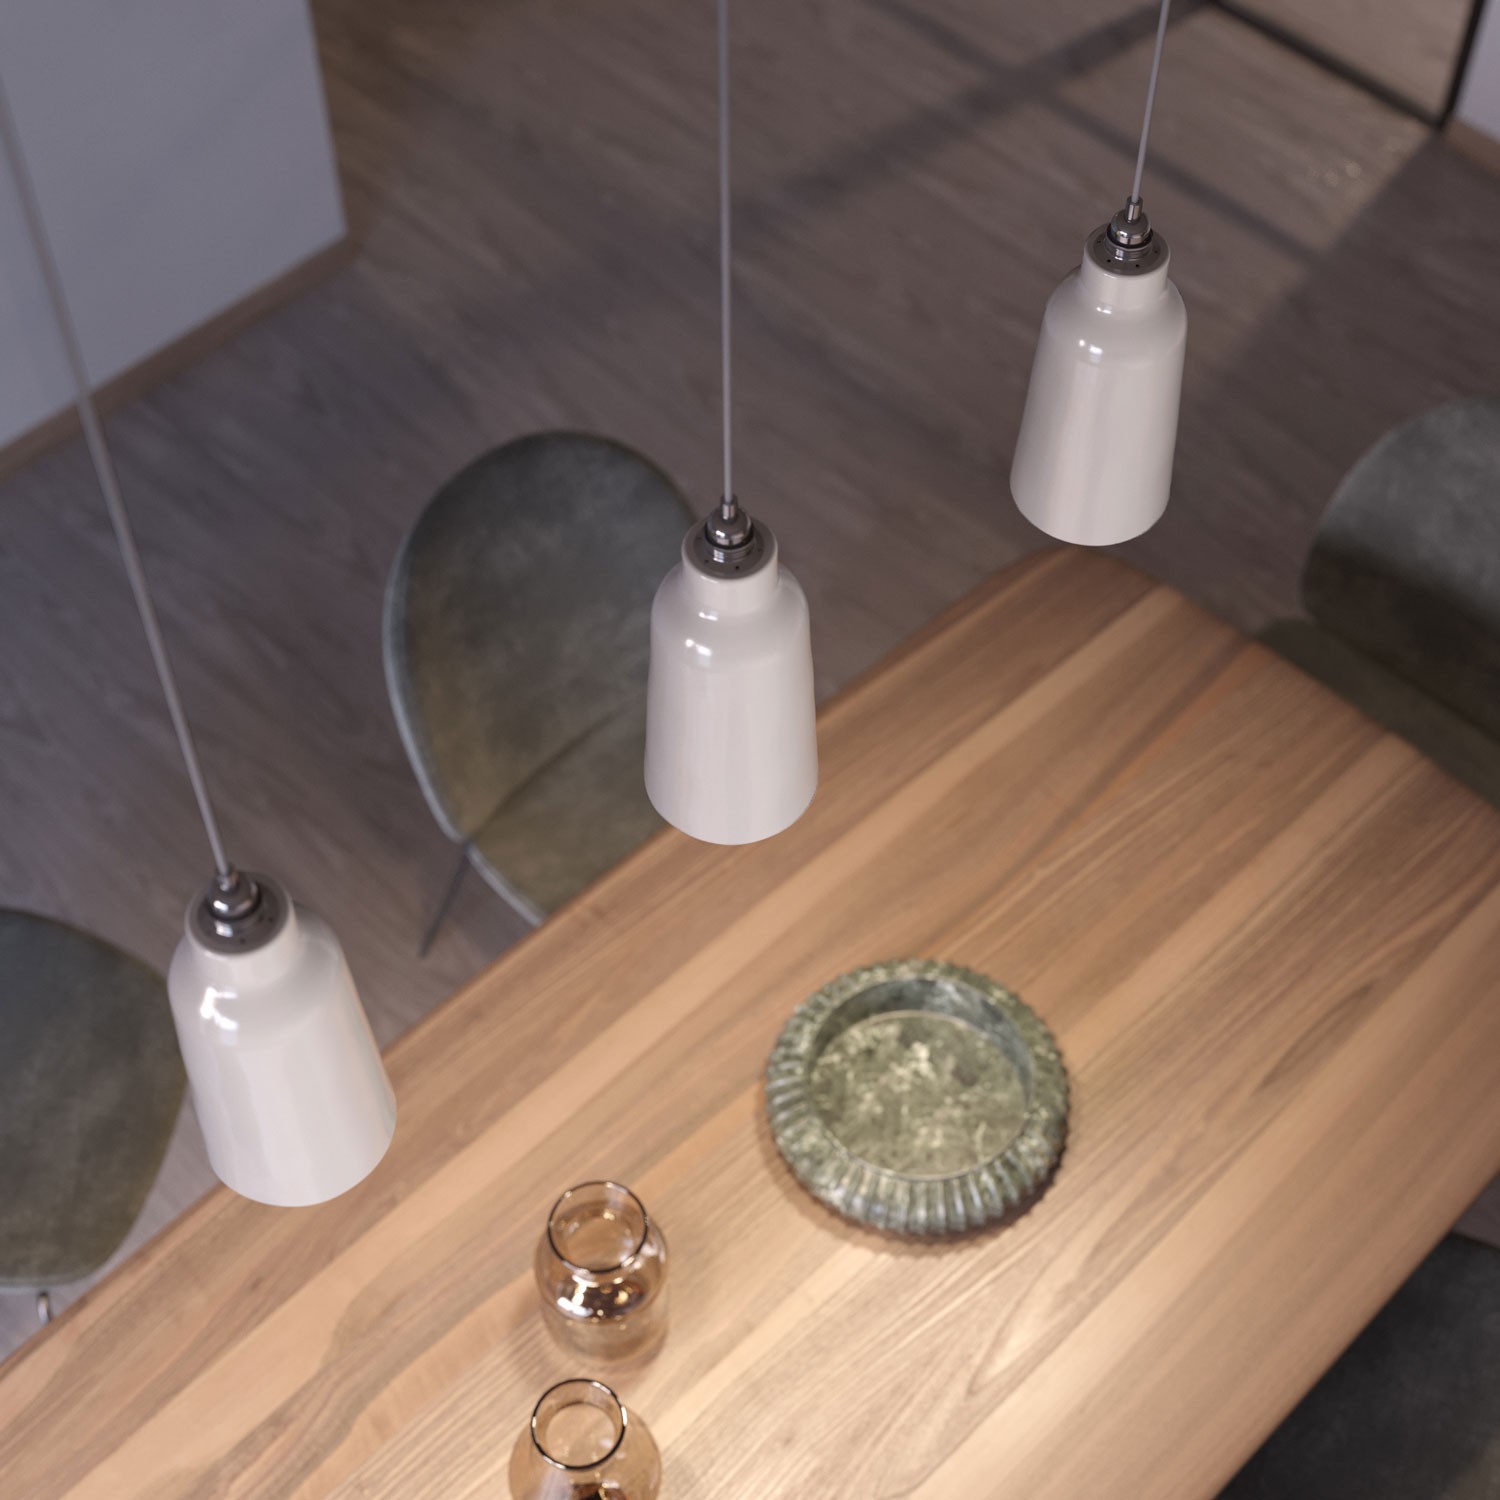 Lámpara colgante hecha en Italia con cable textil, pantalla Botella de cerámica y acabados metálicos